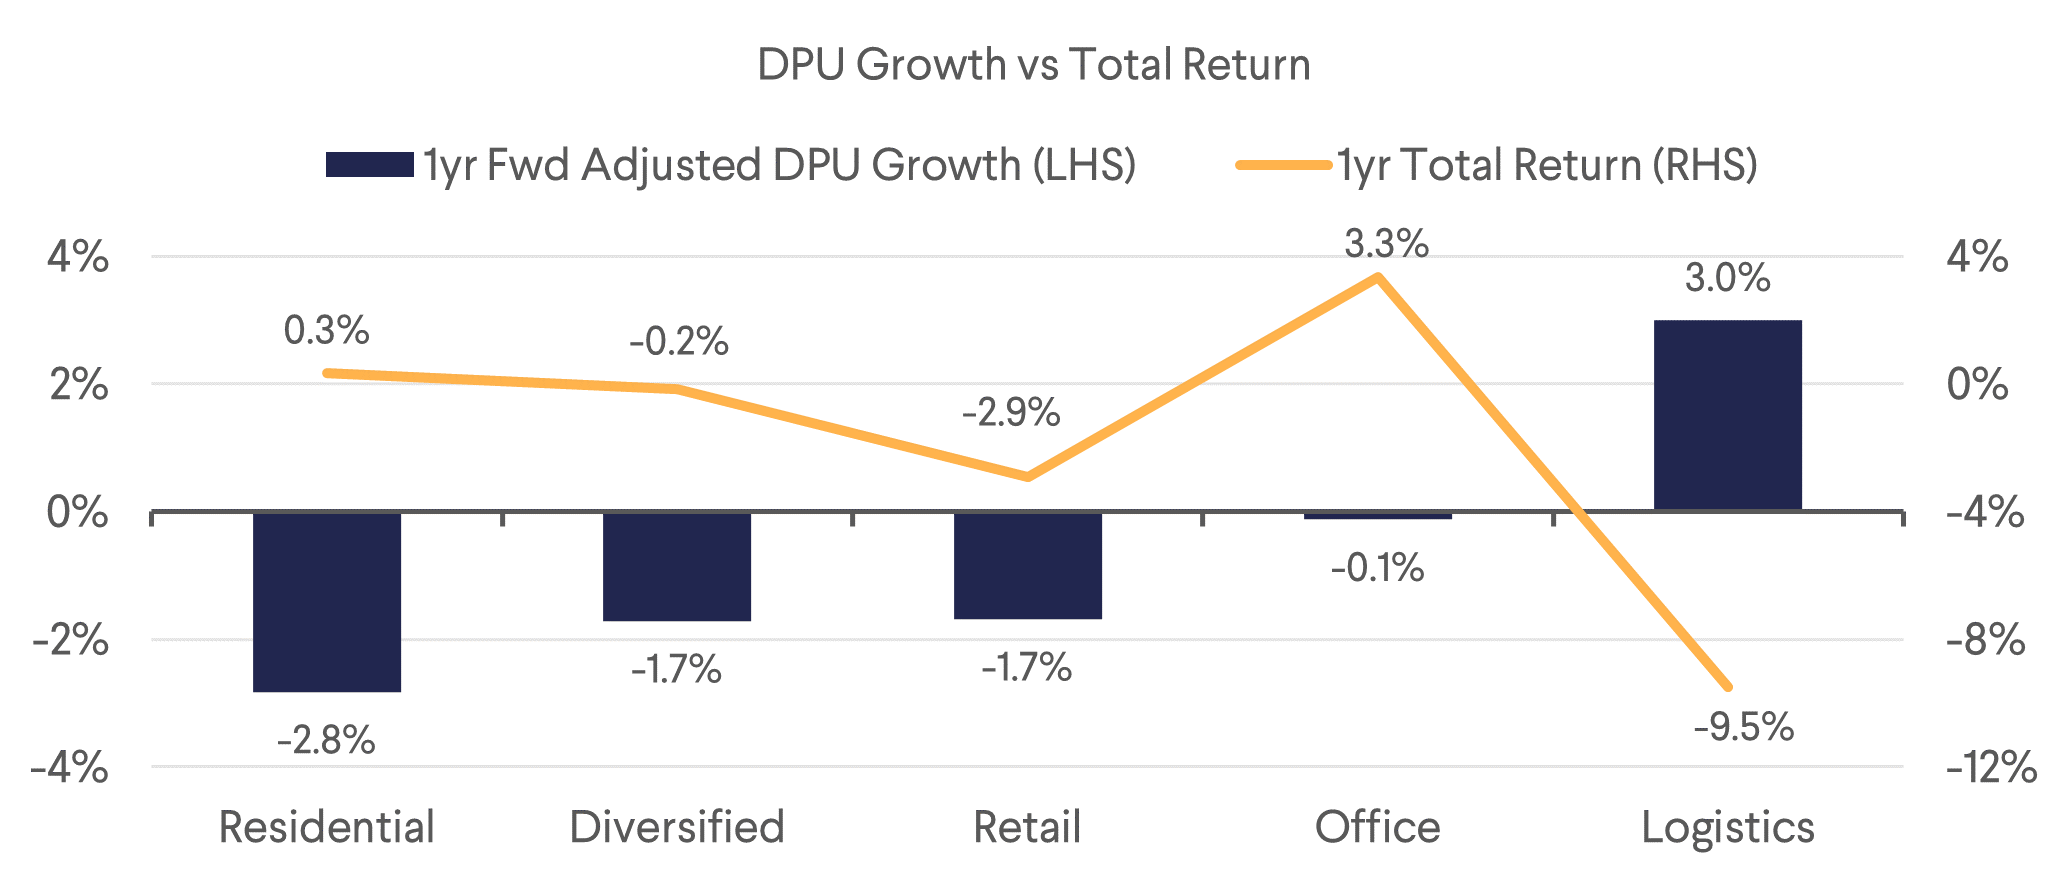 DPU Growth vs Total Return